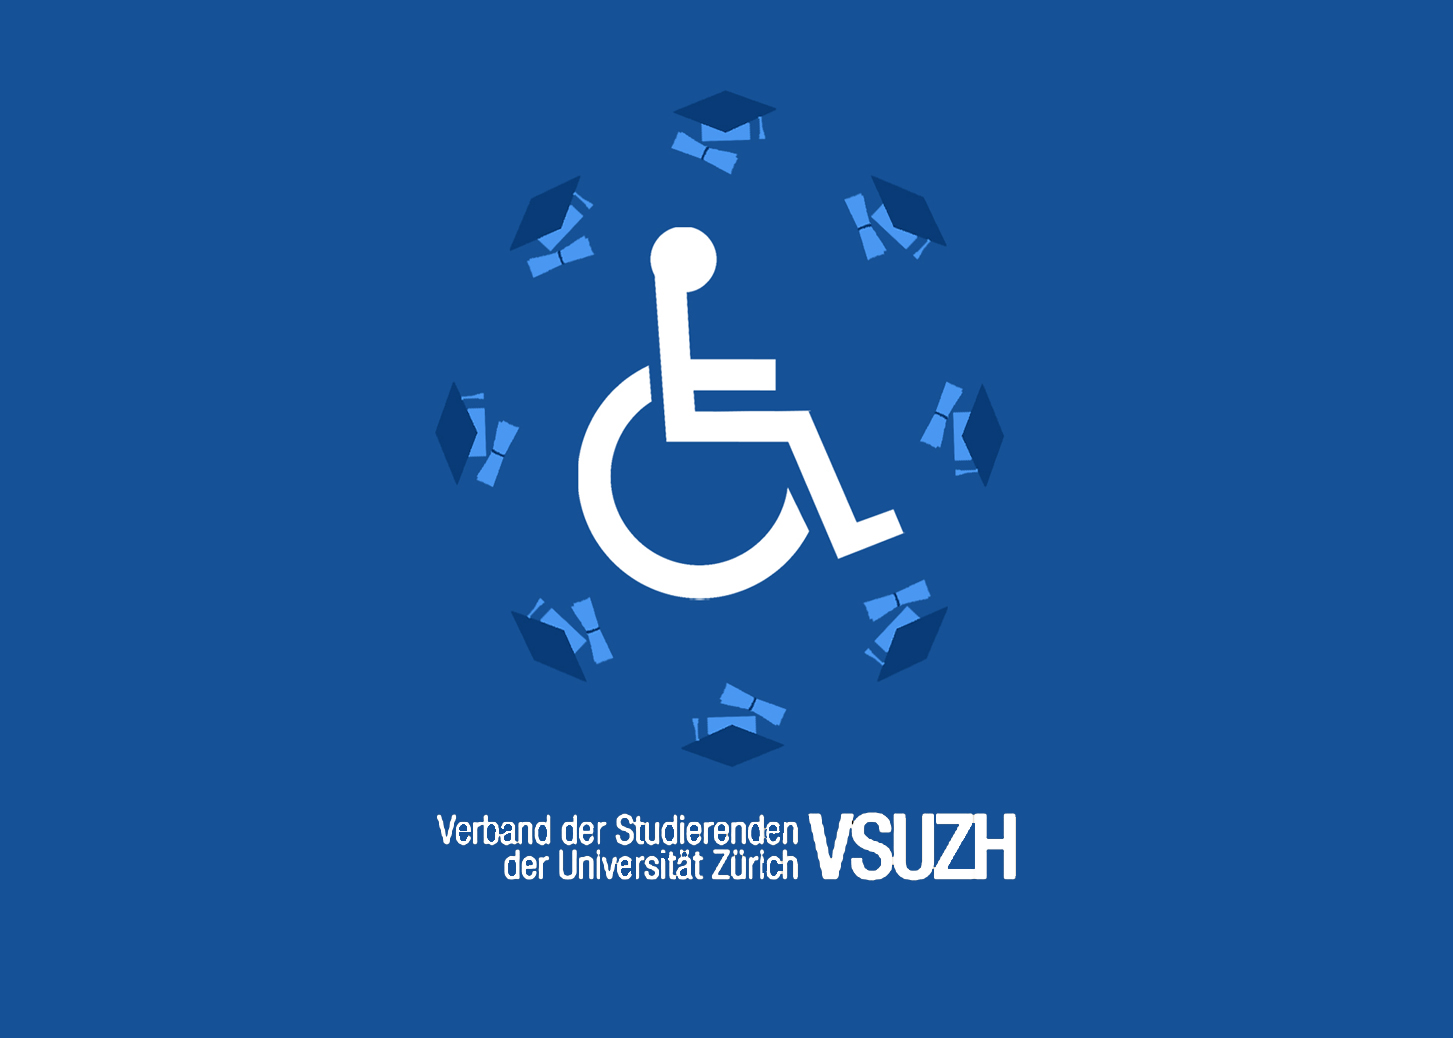 VSS_Jahresbericht_2020_RZ.indd